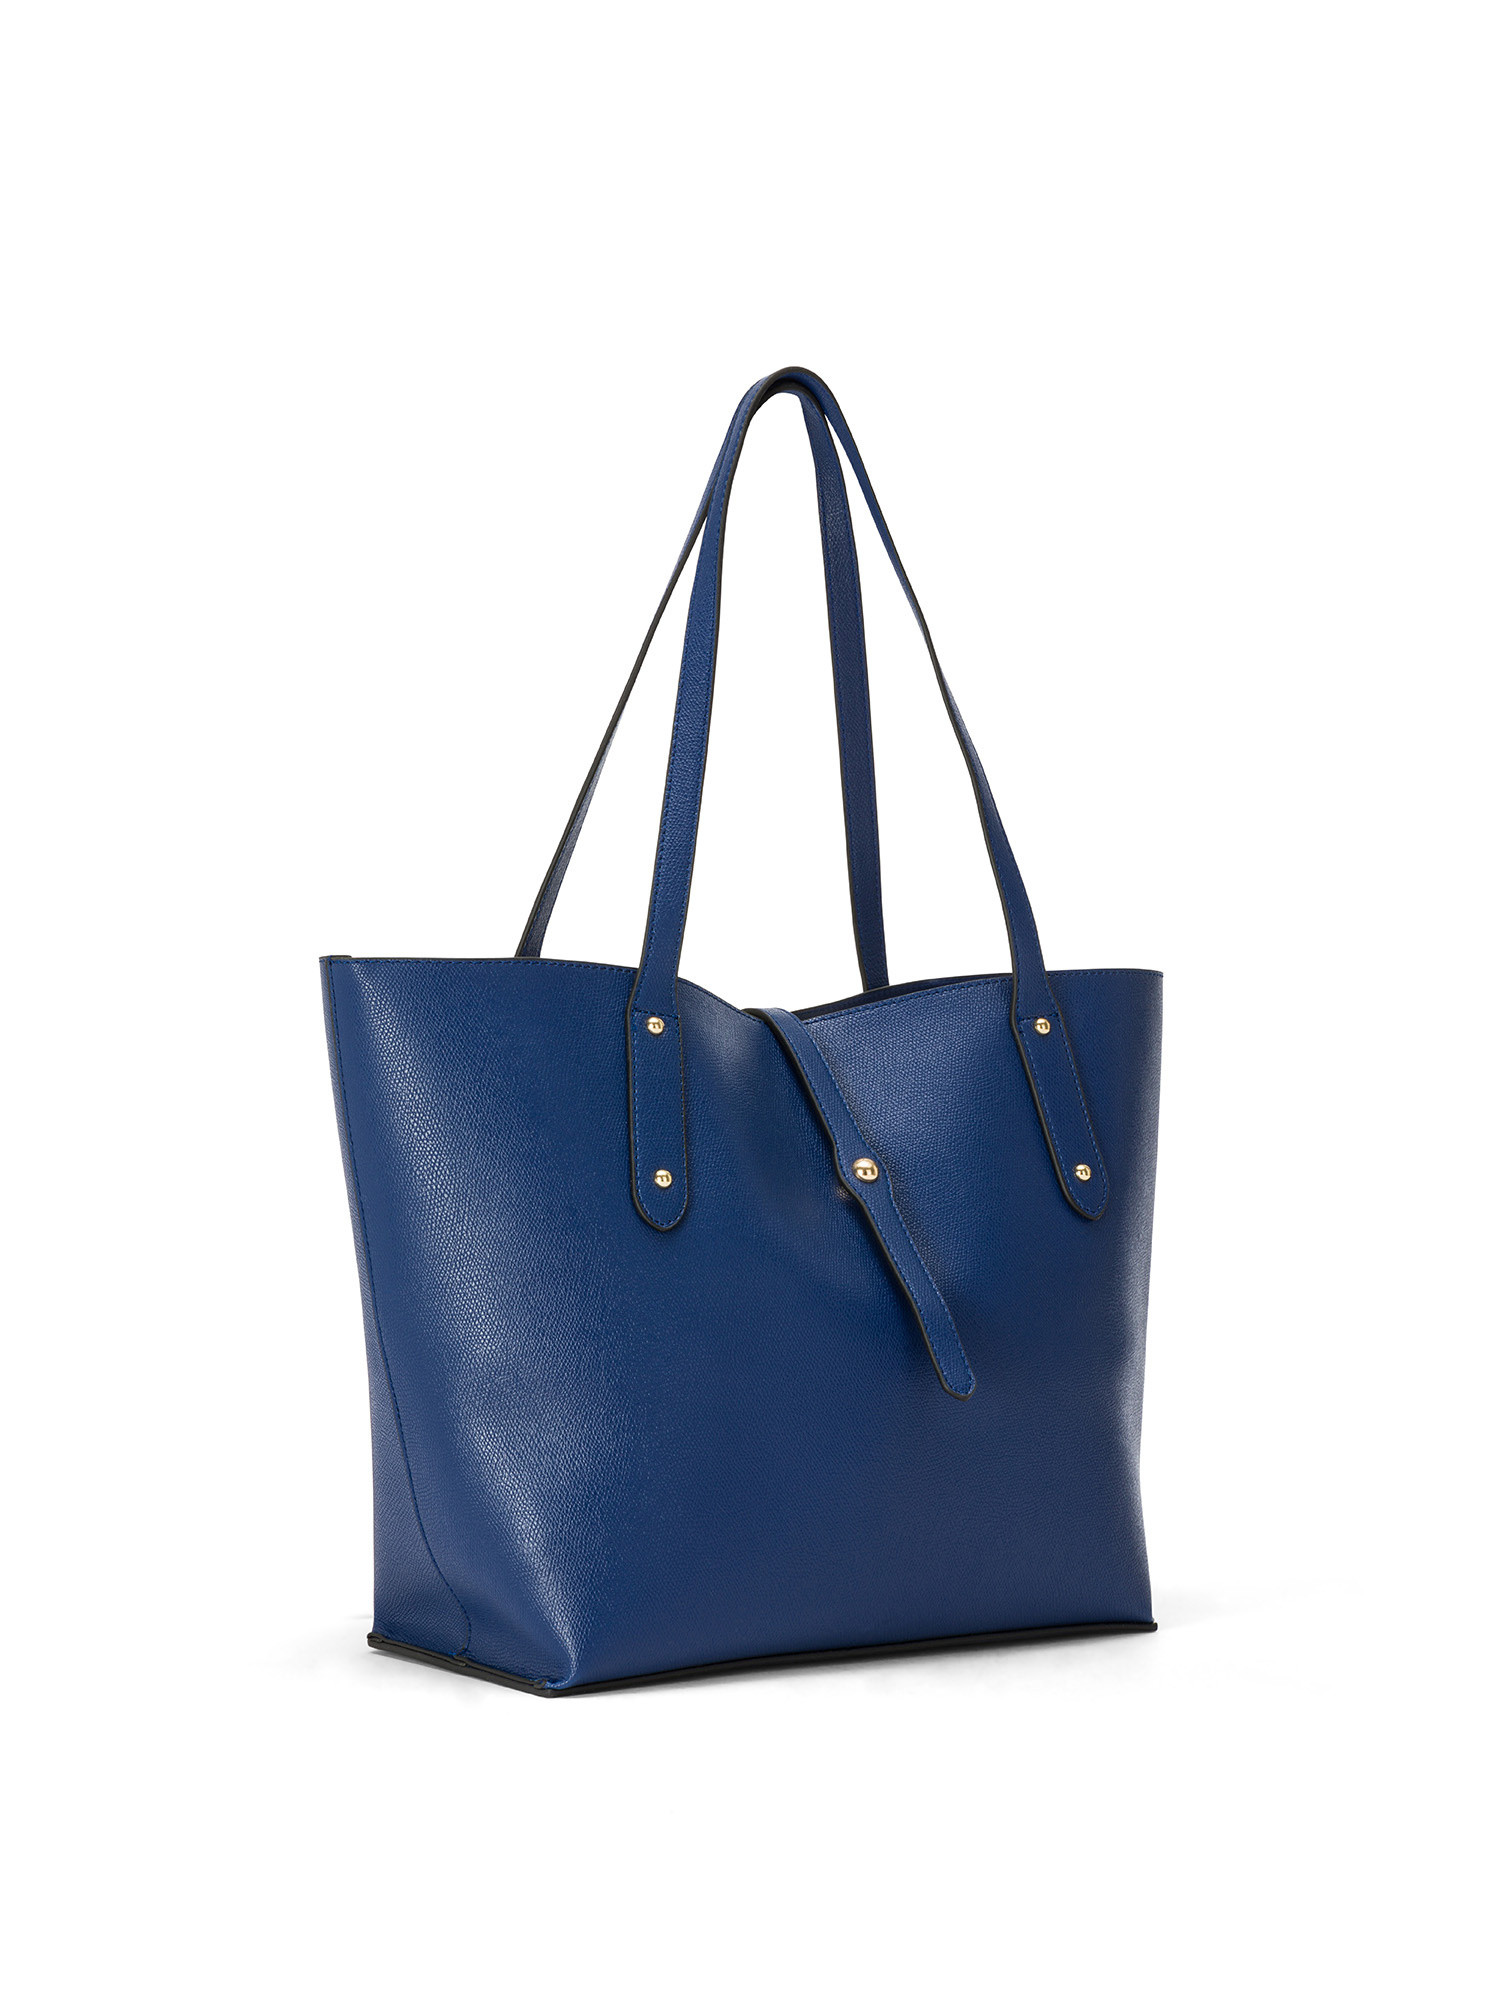 Koan - Shopping bag, Blu royal, large image number 1